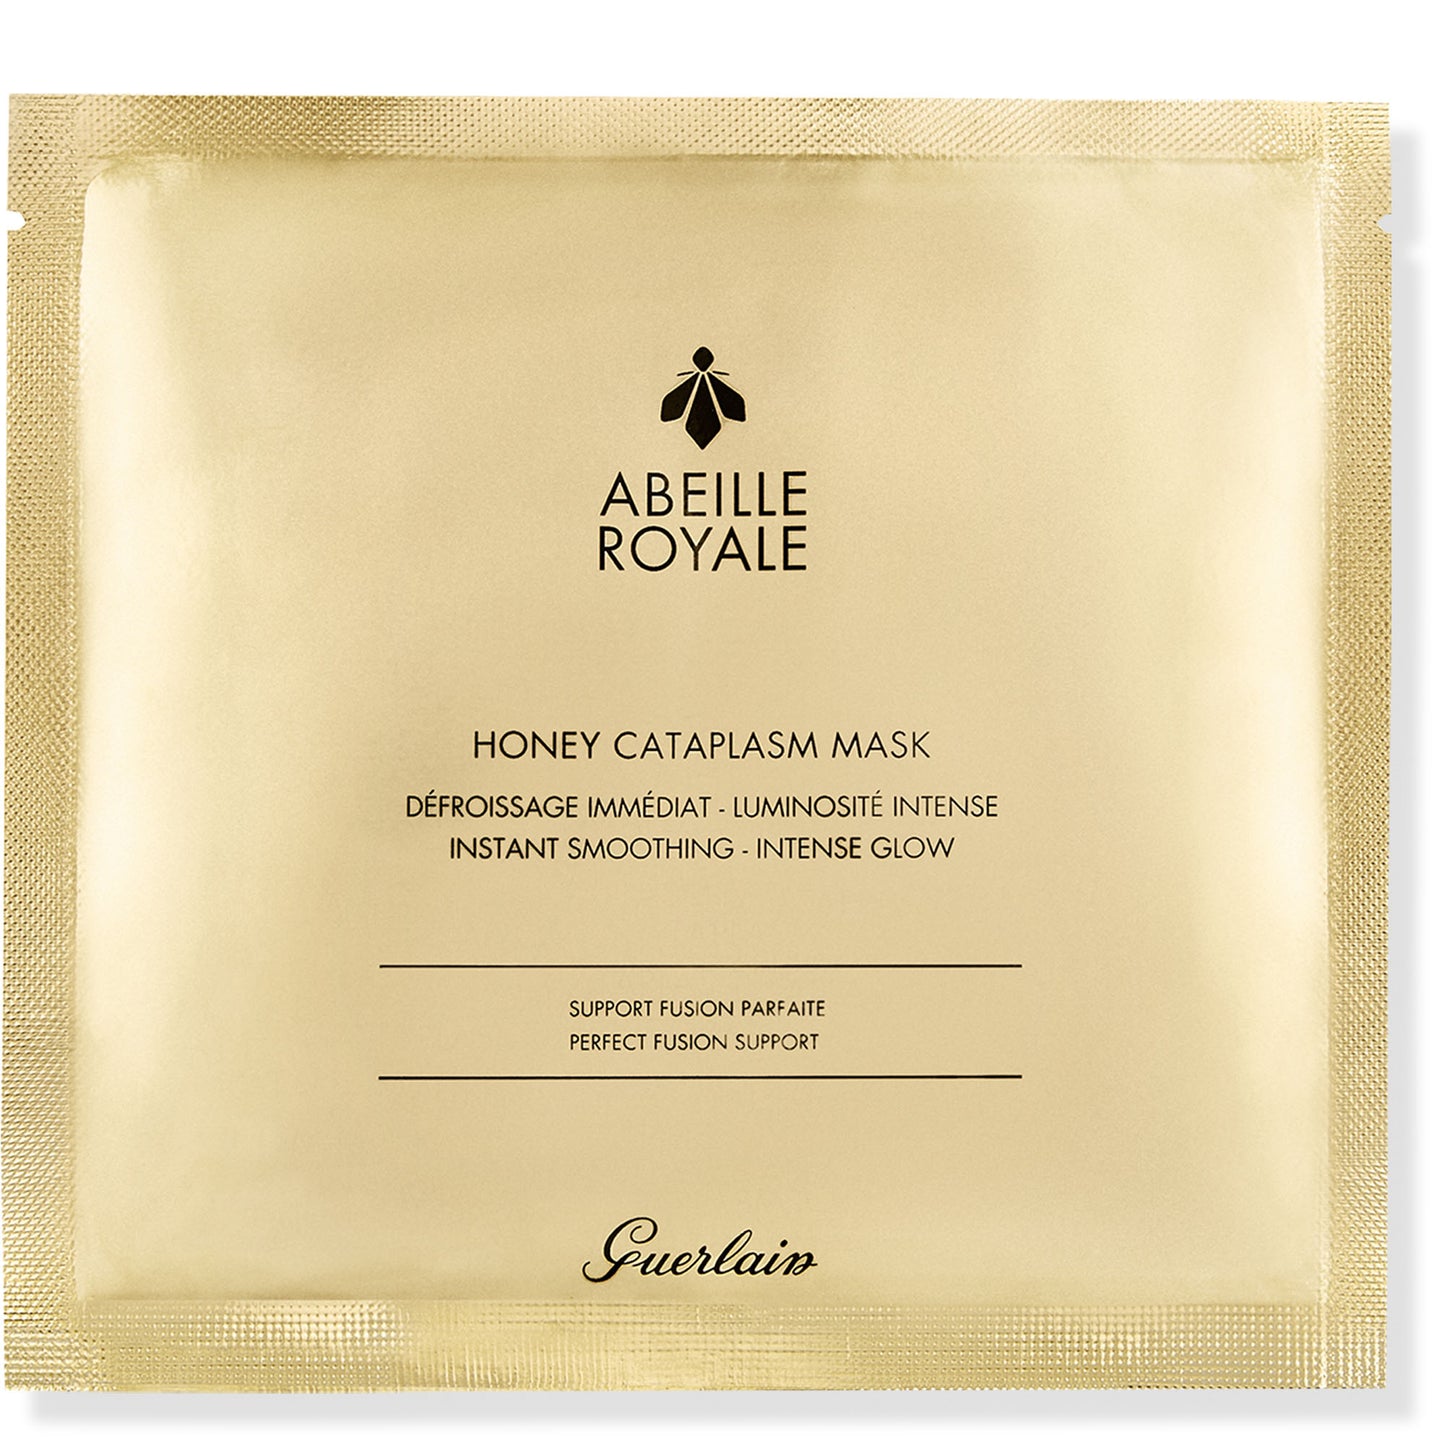 Abeille Royale Honey Cataplasm Mask 4pz